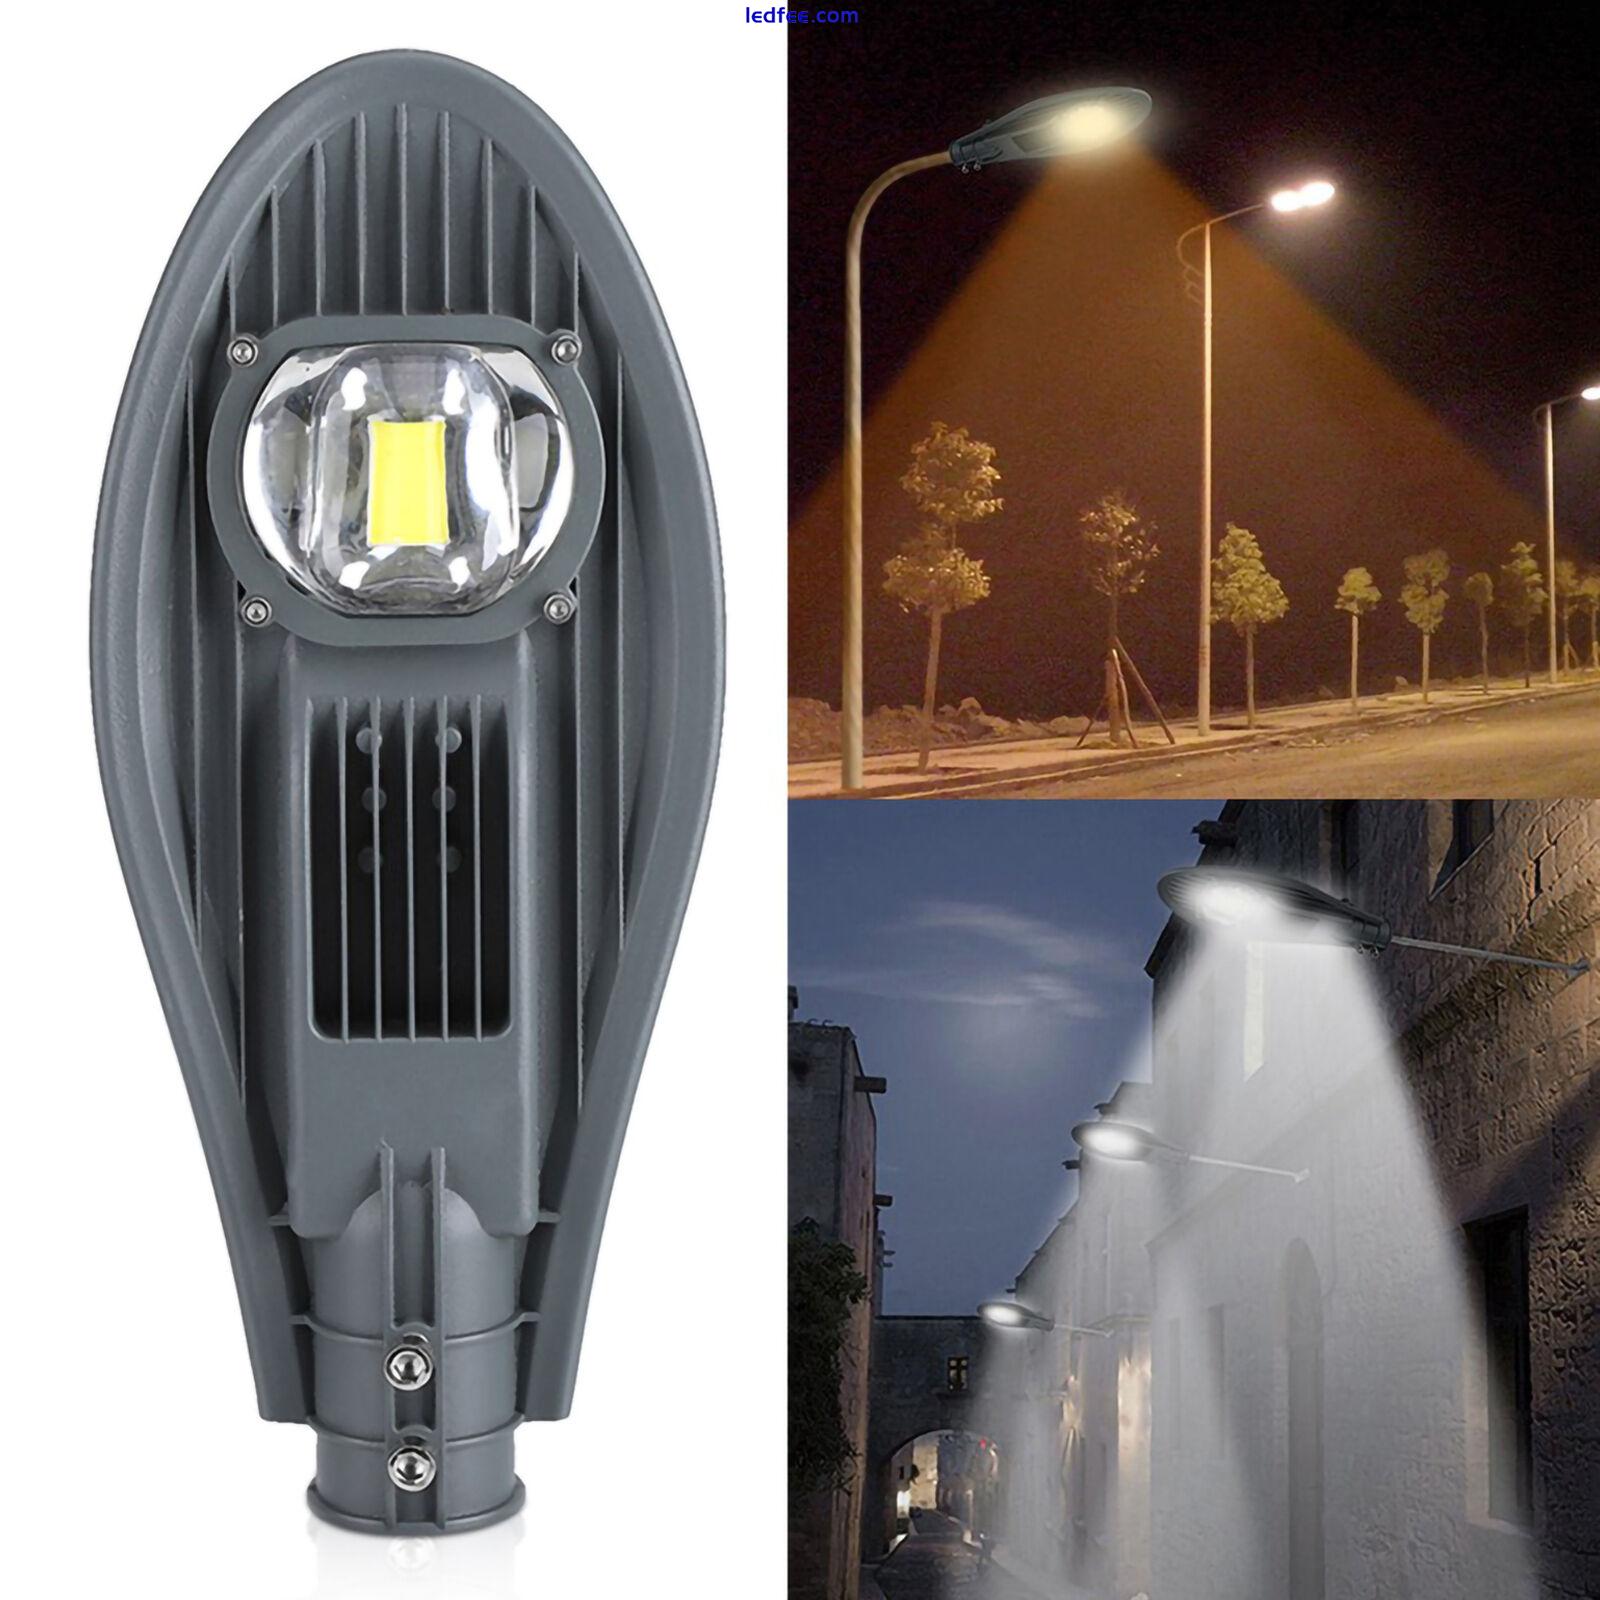 LED Road Street Flood Light Lamp For Outdoor Garden Yard Lamp Lighting☜ 1 